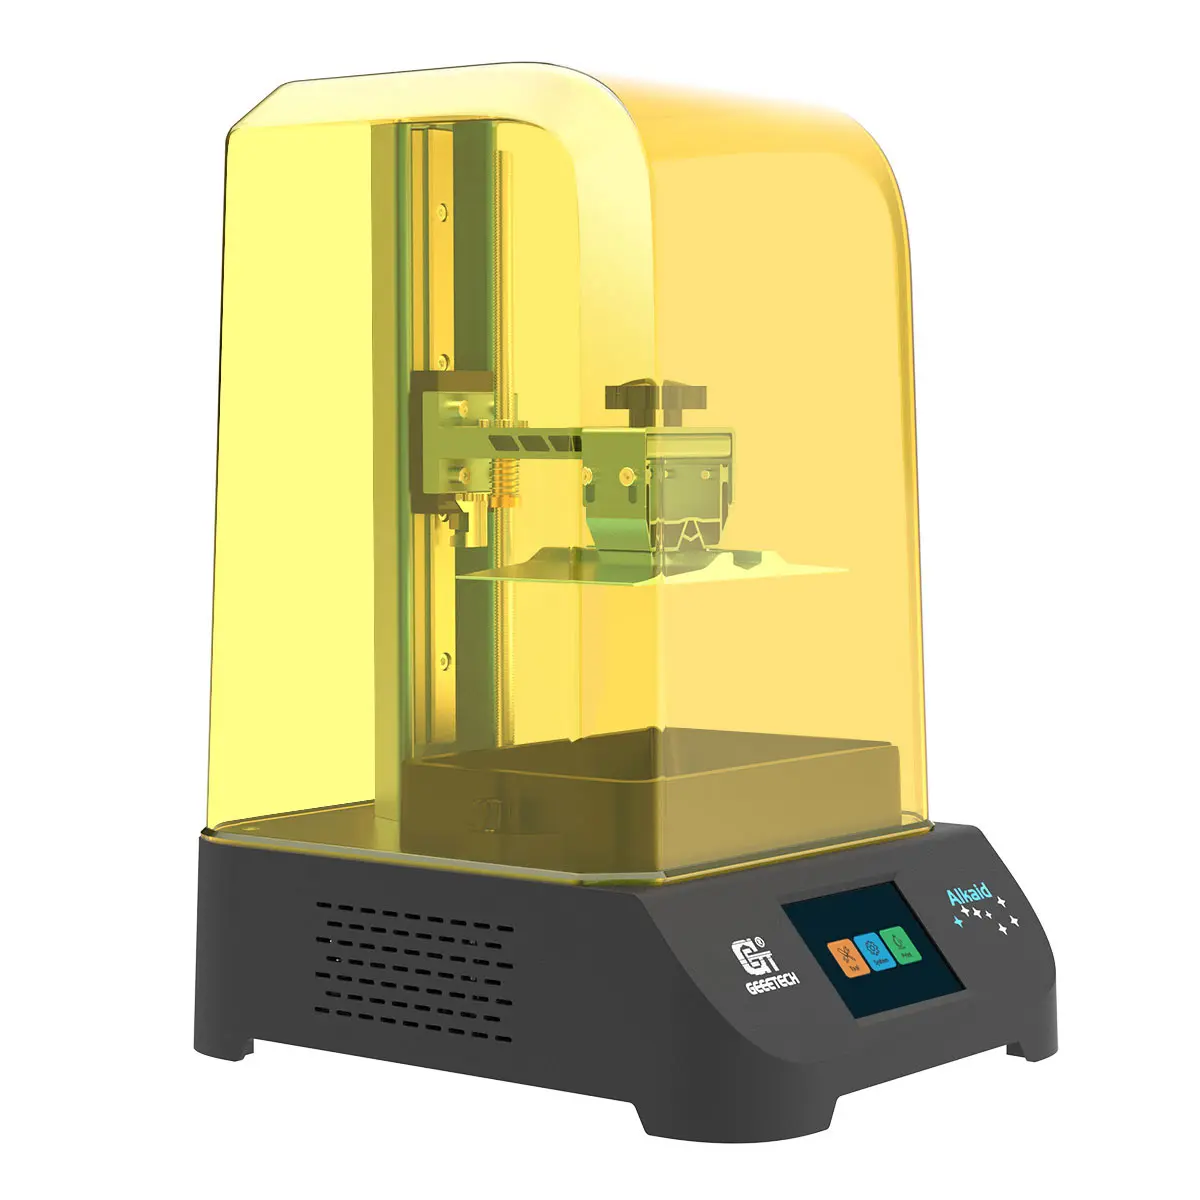 Geeetech nuovo prodotto Alkaid 2023 prezzo basso vendita calda uso conveniente tecnologia di imaging LCD per stampante 3D in resina